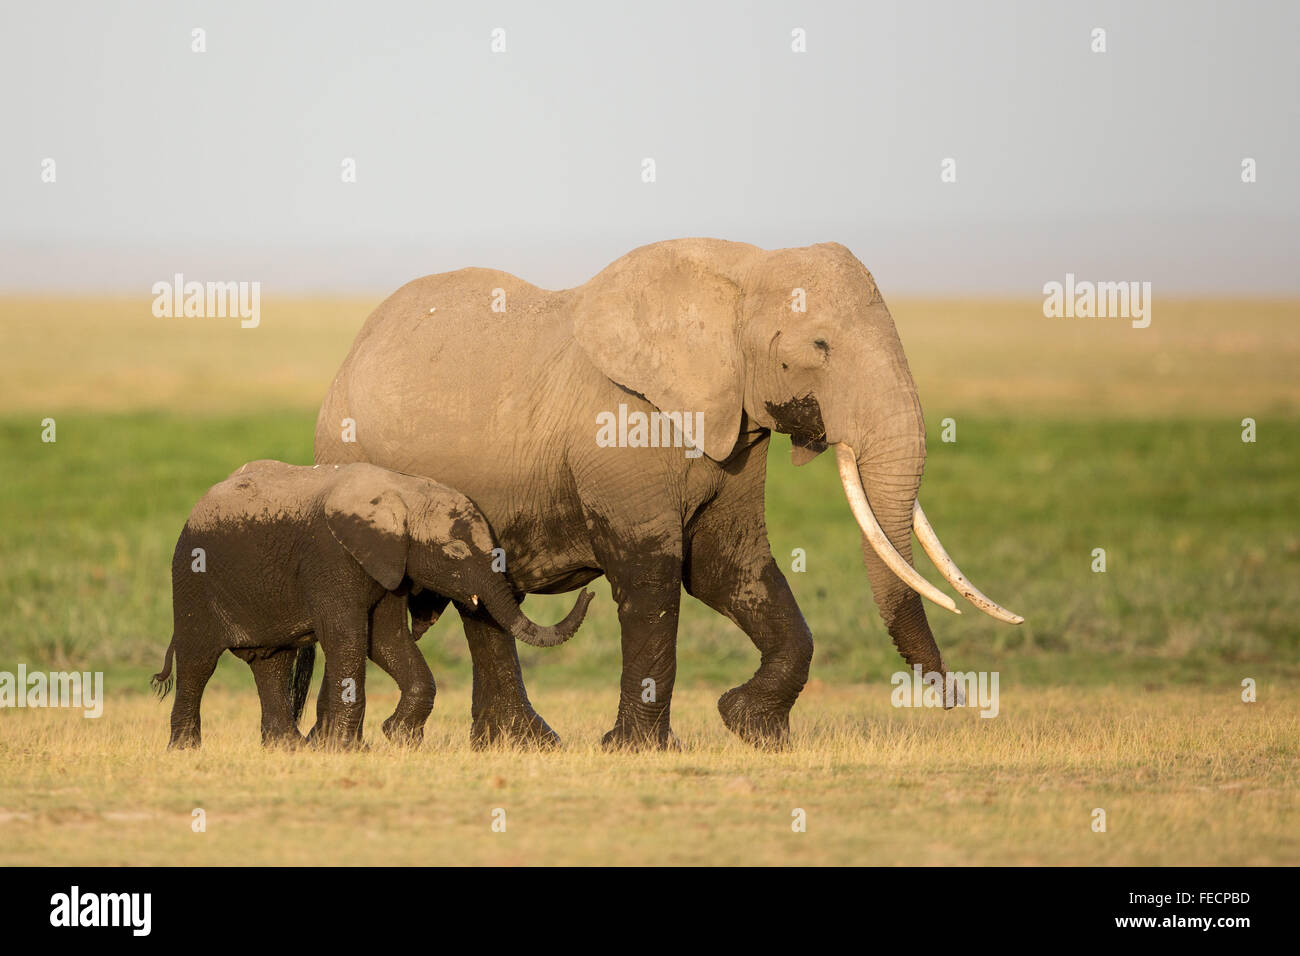 Deux éléphants africains une grande femelle adulte avec son veau de 2 ans dans le Parc national Amboseli au Kenya Banque D'Images